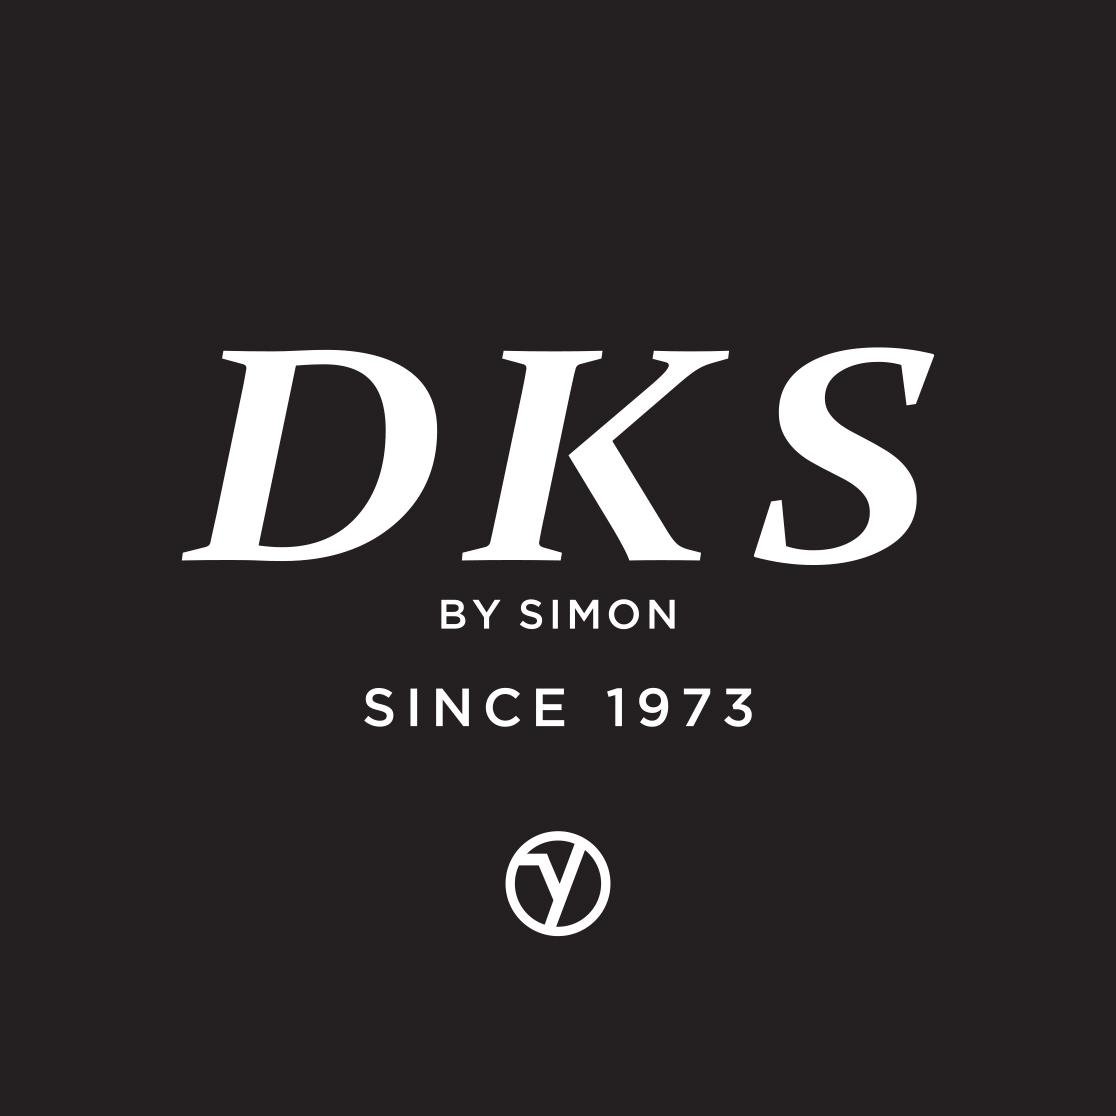 Depuis 1973, DKS est spécialiste dans la réalisation de modèles, femme,homme en cuir : manteaux, blousons, vestes, gilets, pantalons, jupes, robes, ect...